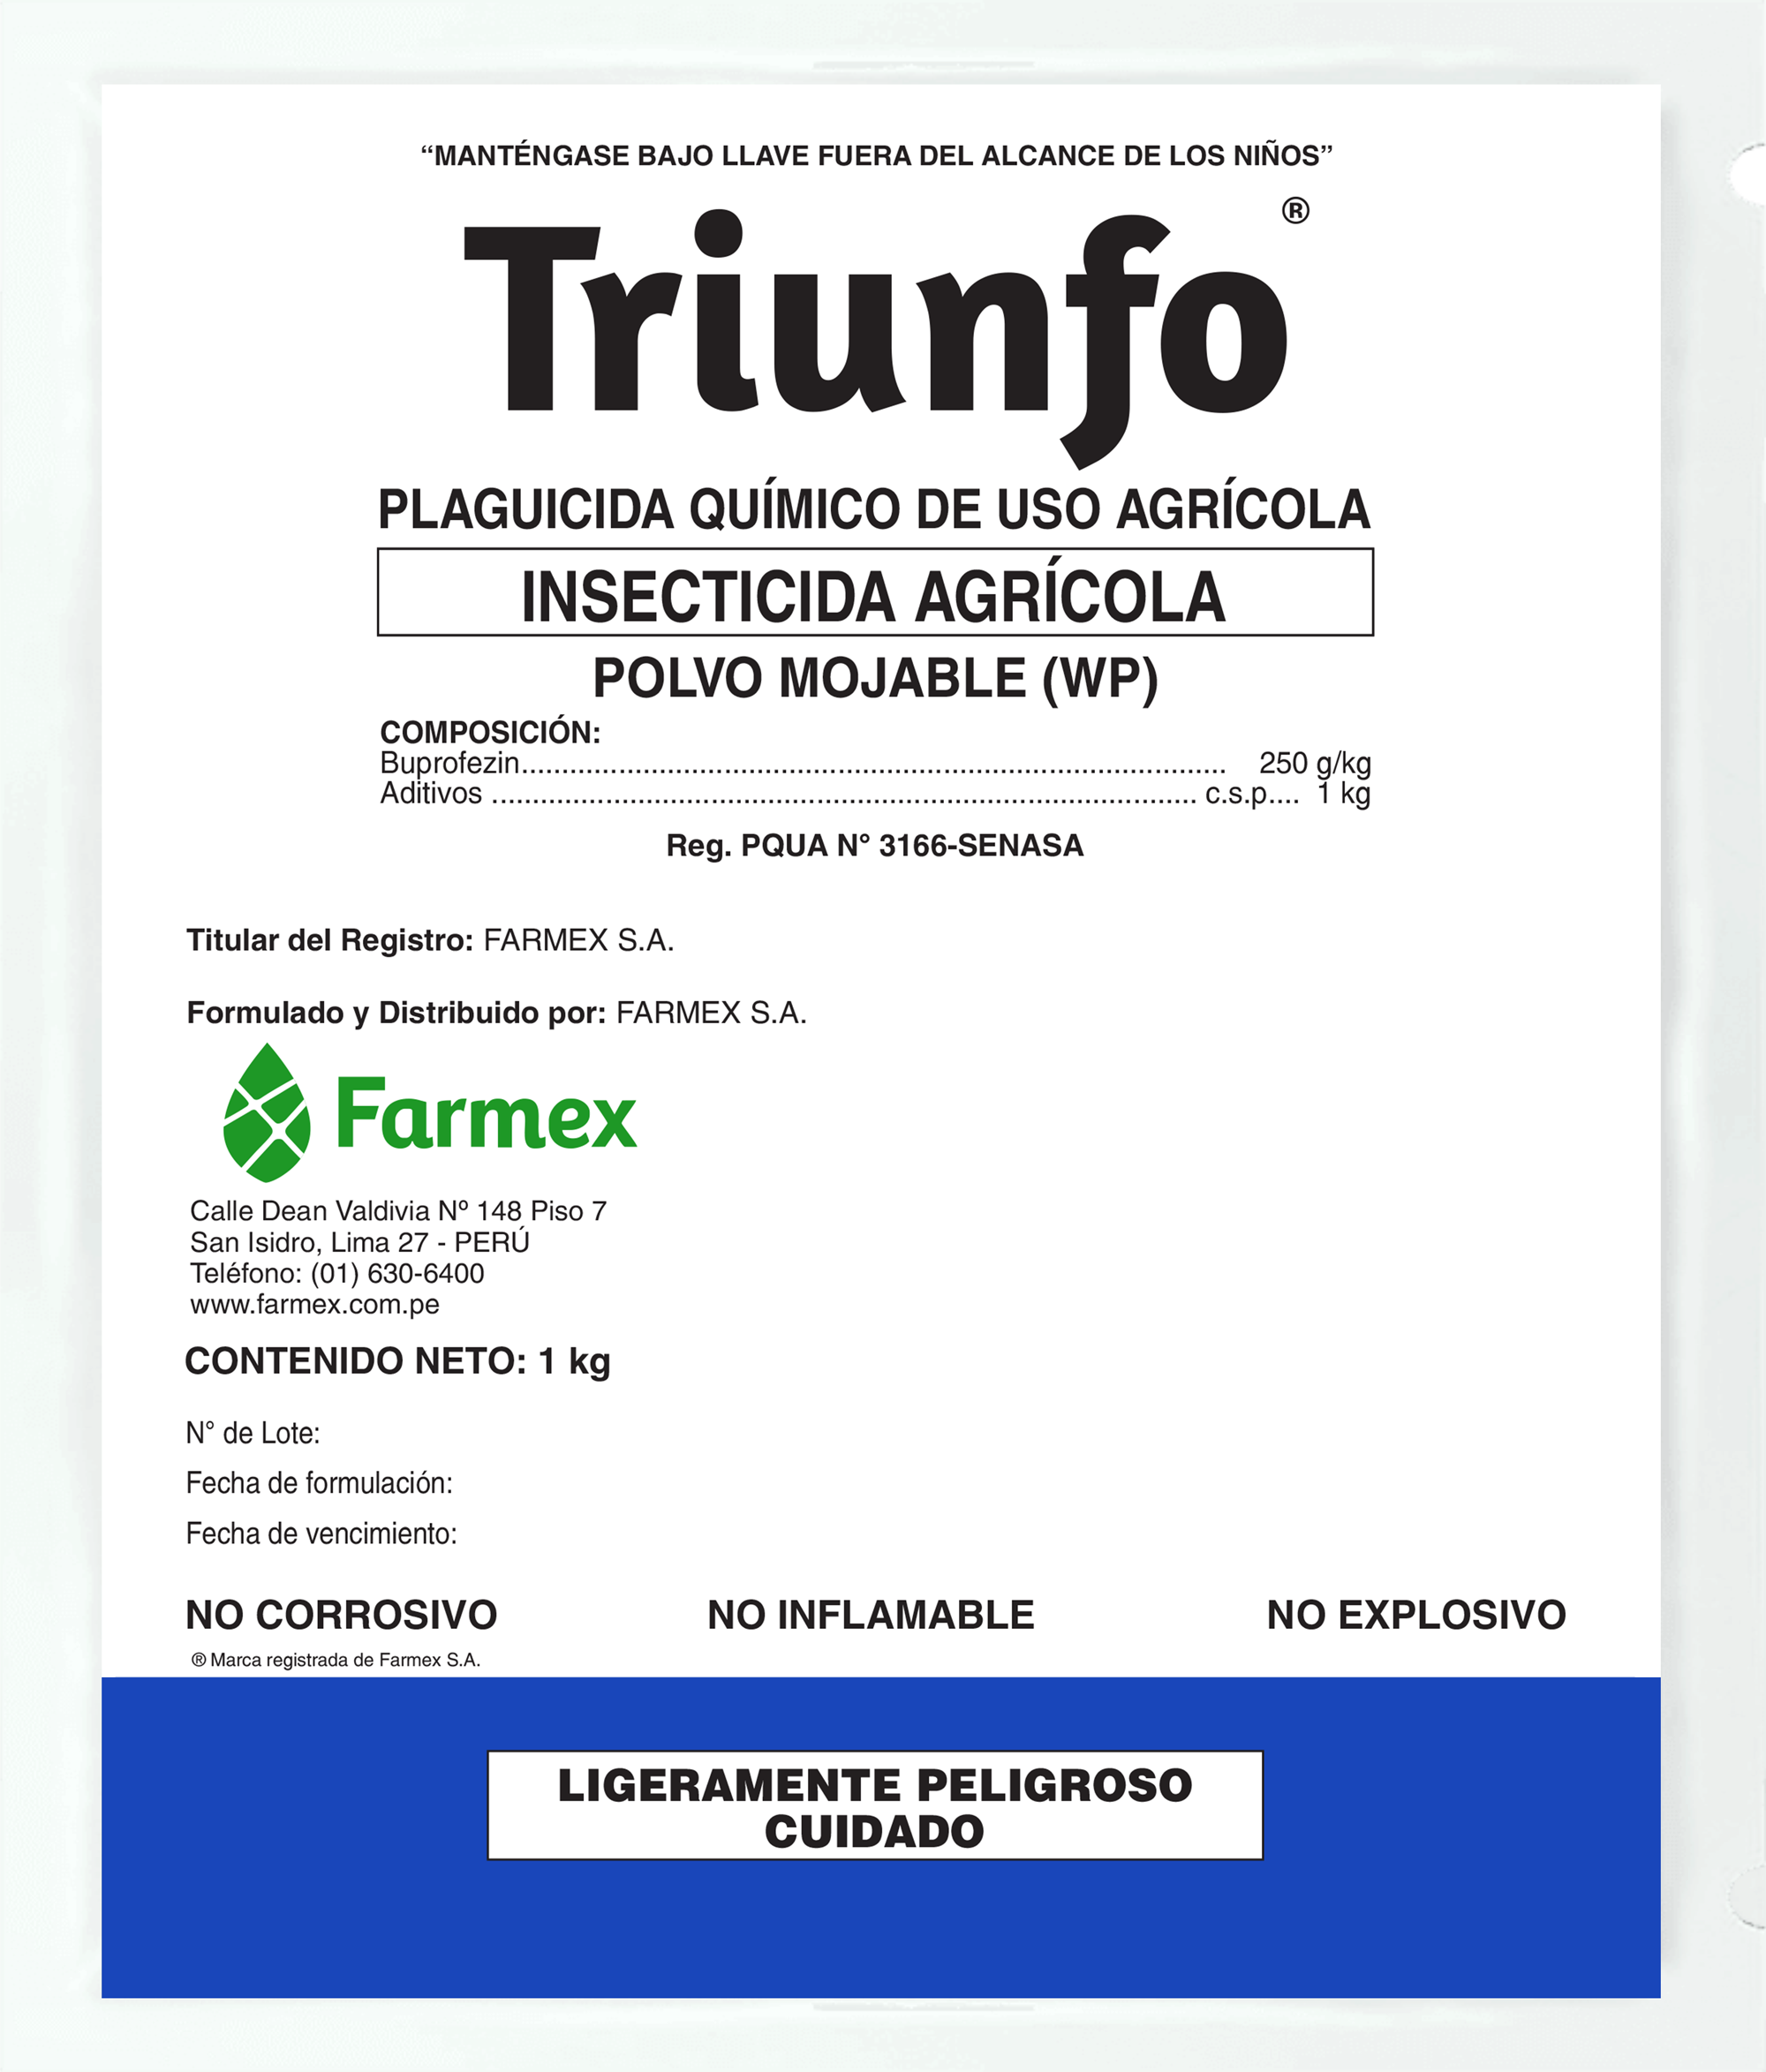 Triunfo